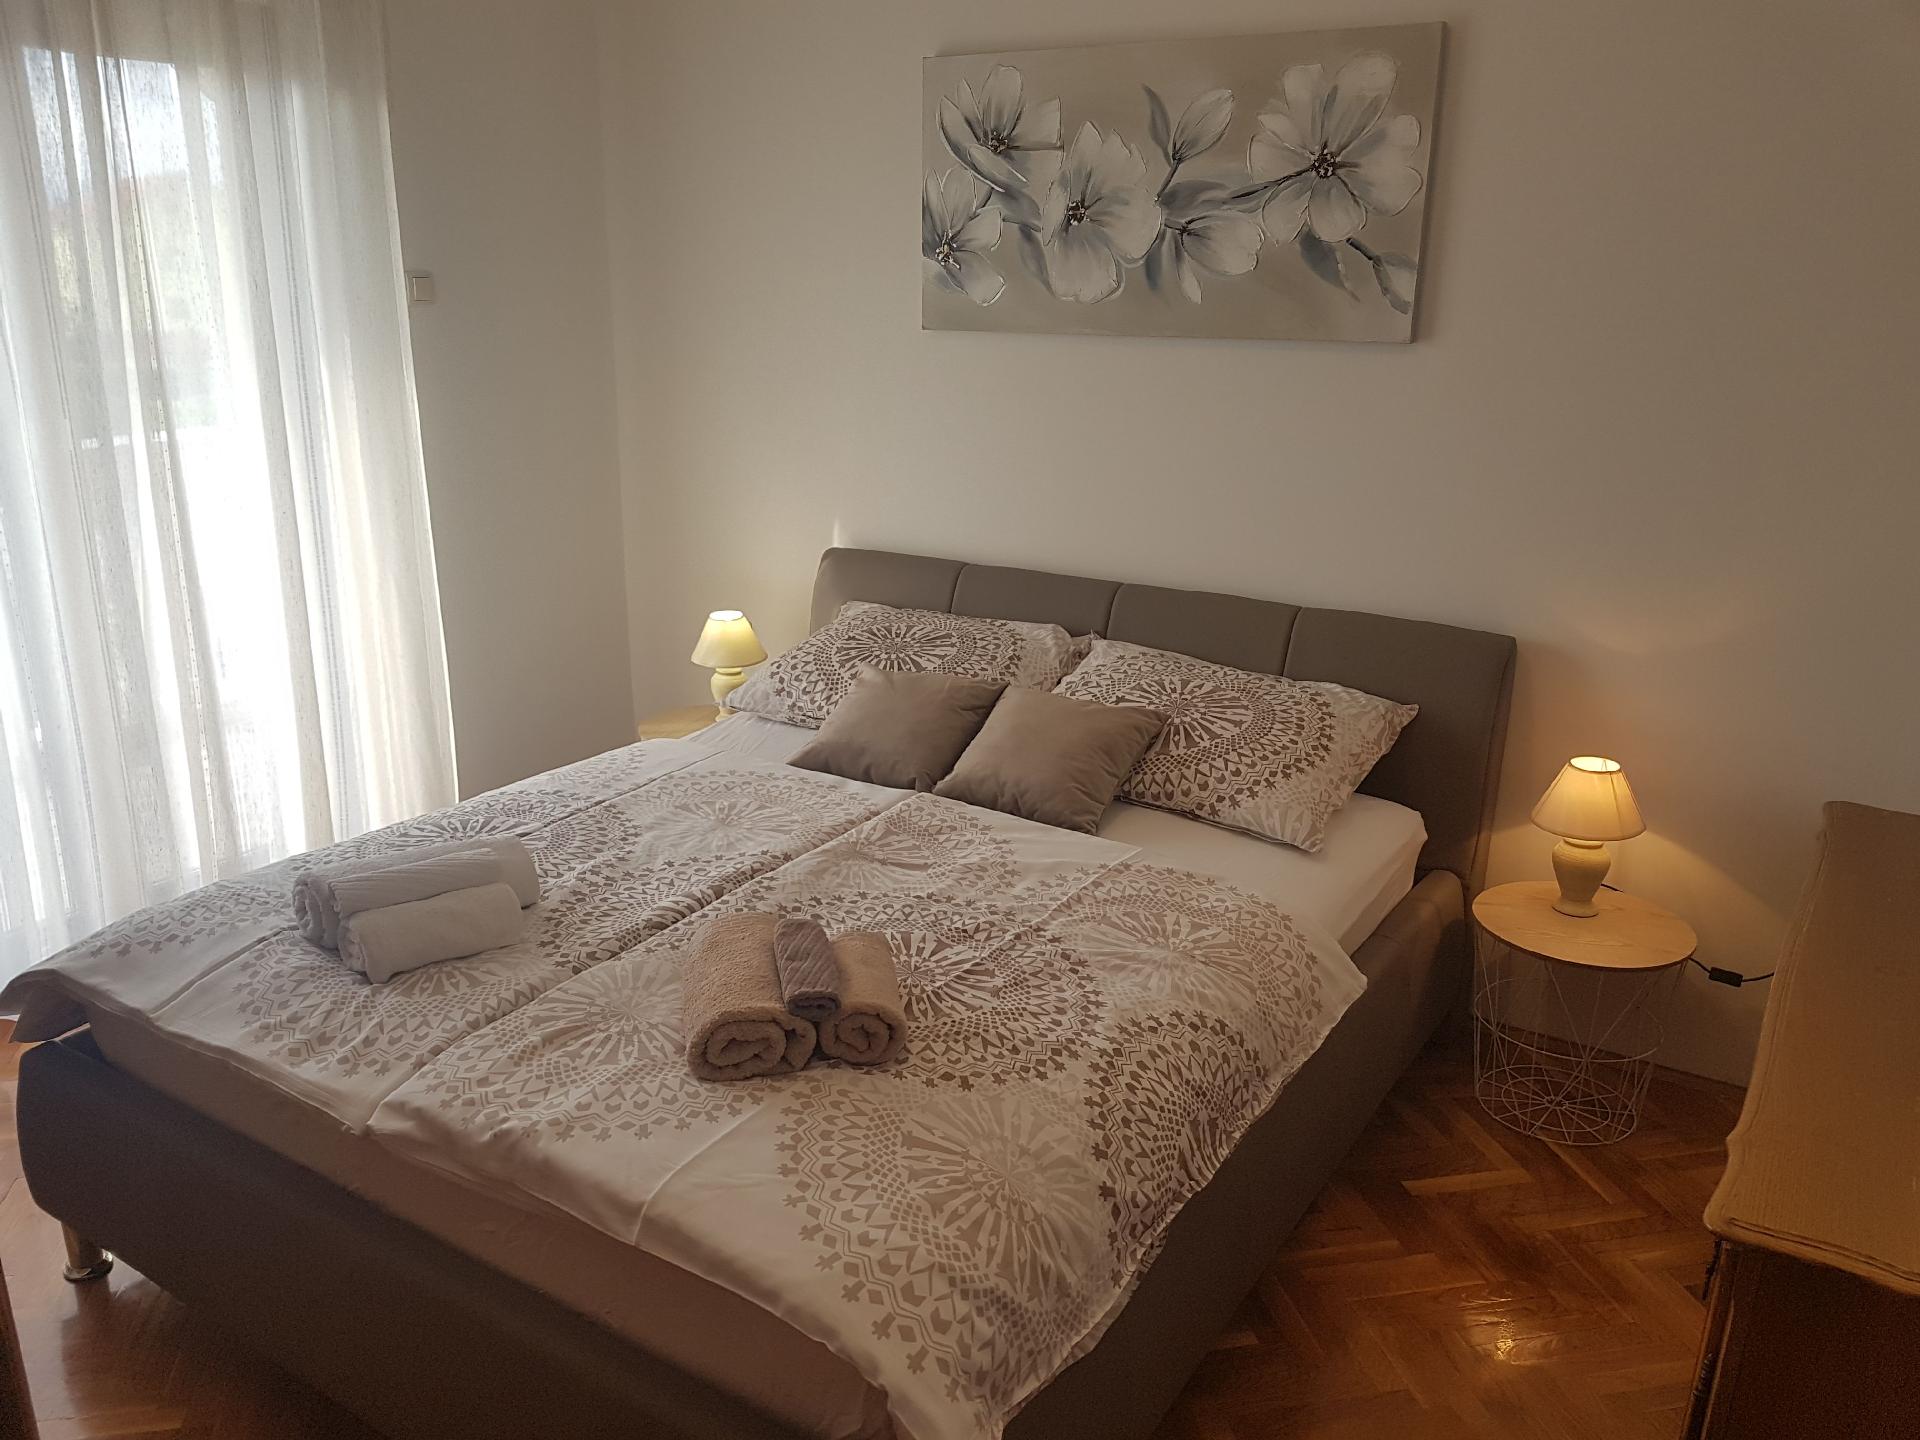 Ferienwohnung für 4 Personen ca. 120 m²  Ferienhaus in Kroatien